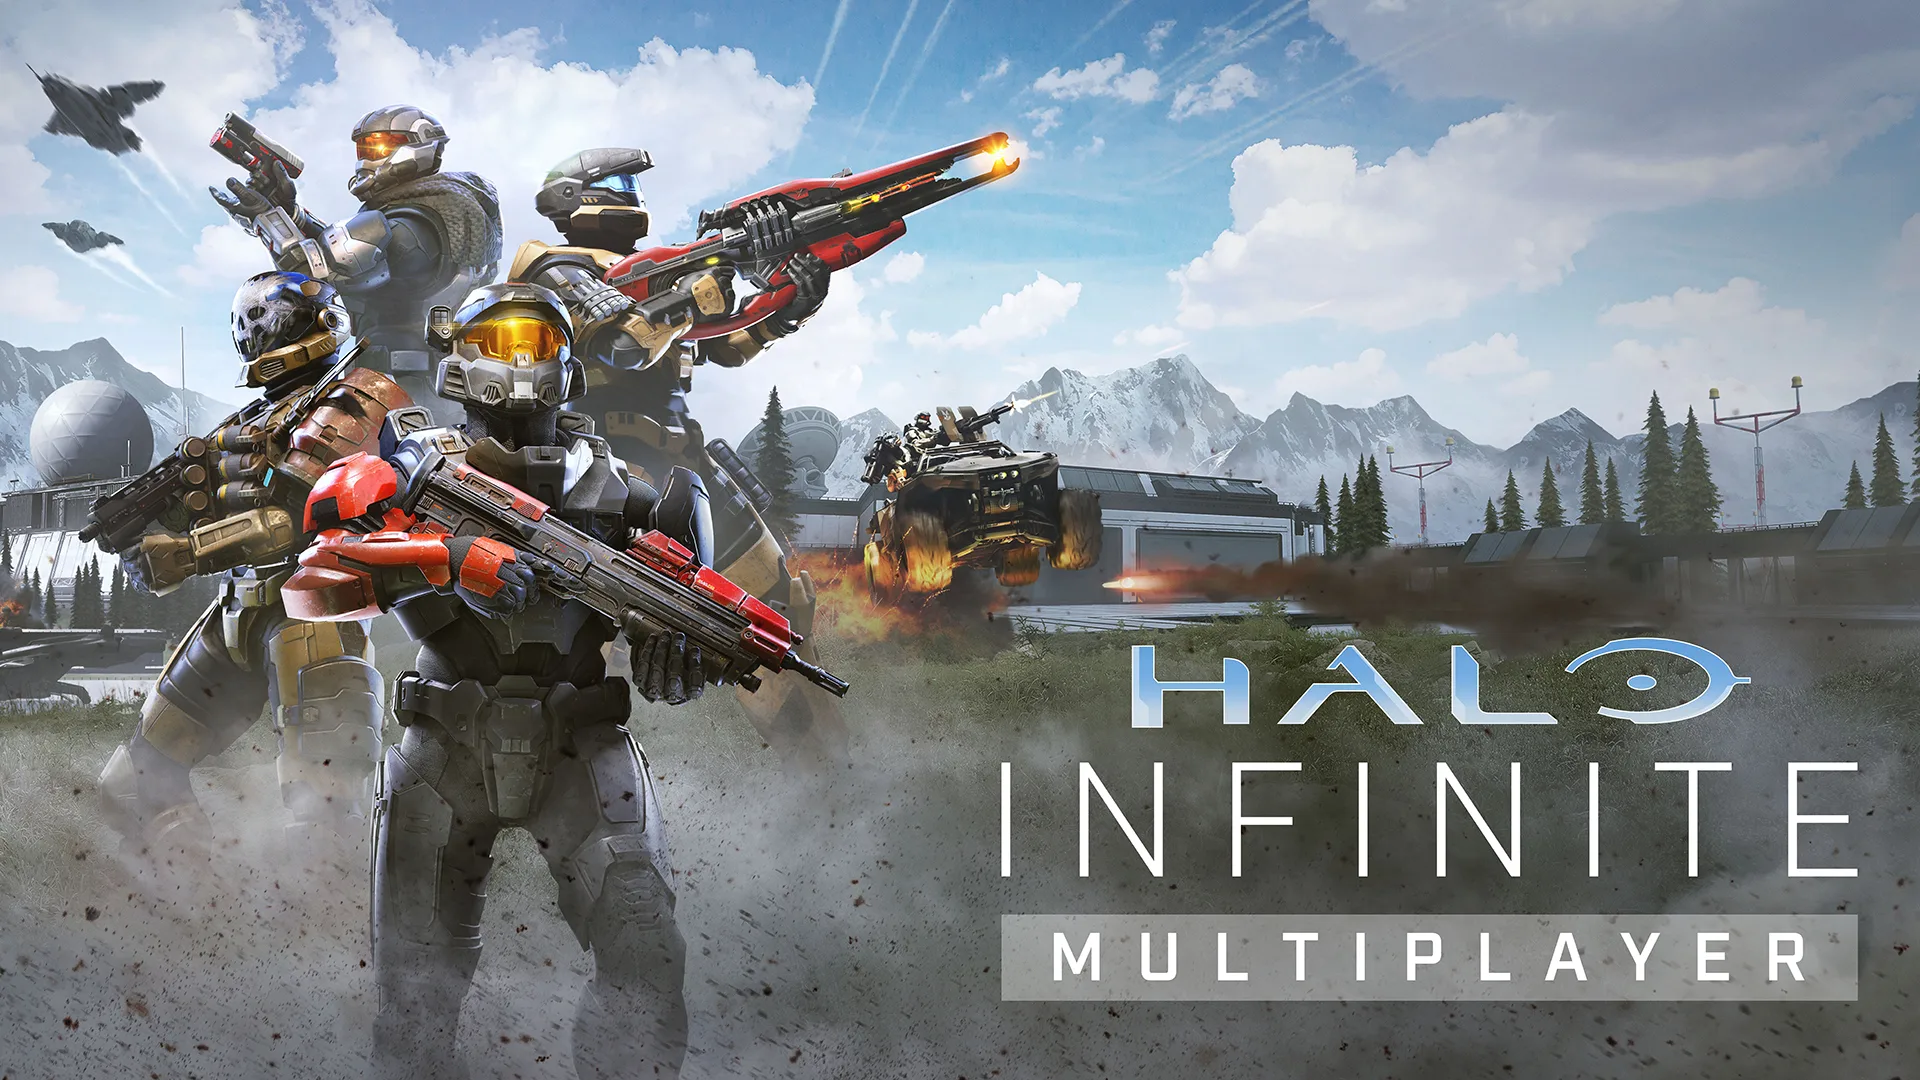 إشاعة: طور اللعب الجماعي للعبة Halo Infinite سيتوفر خلال هذا الأسبوع